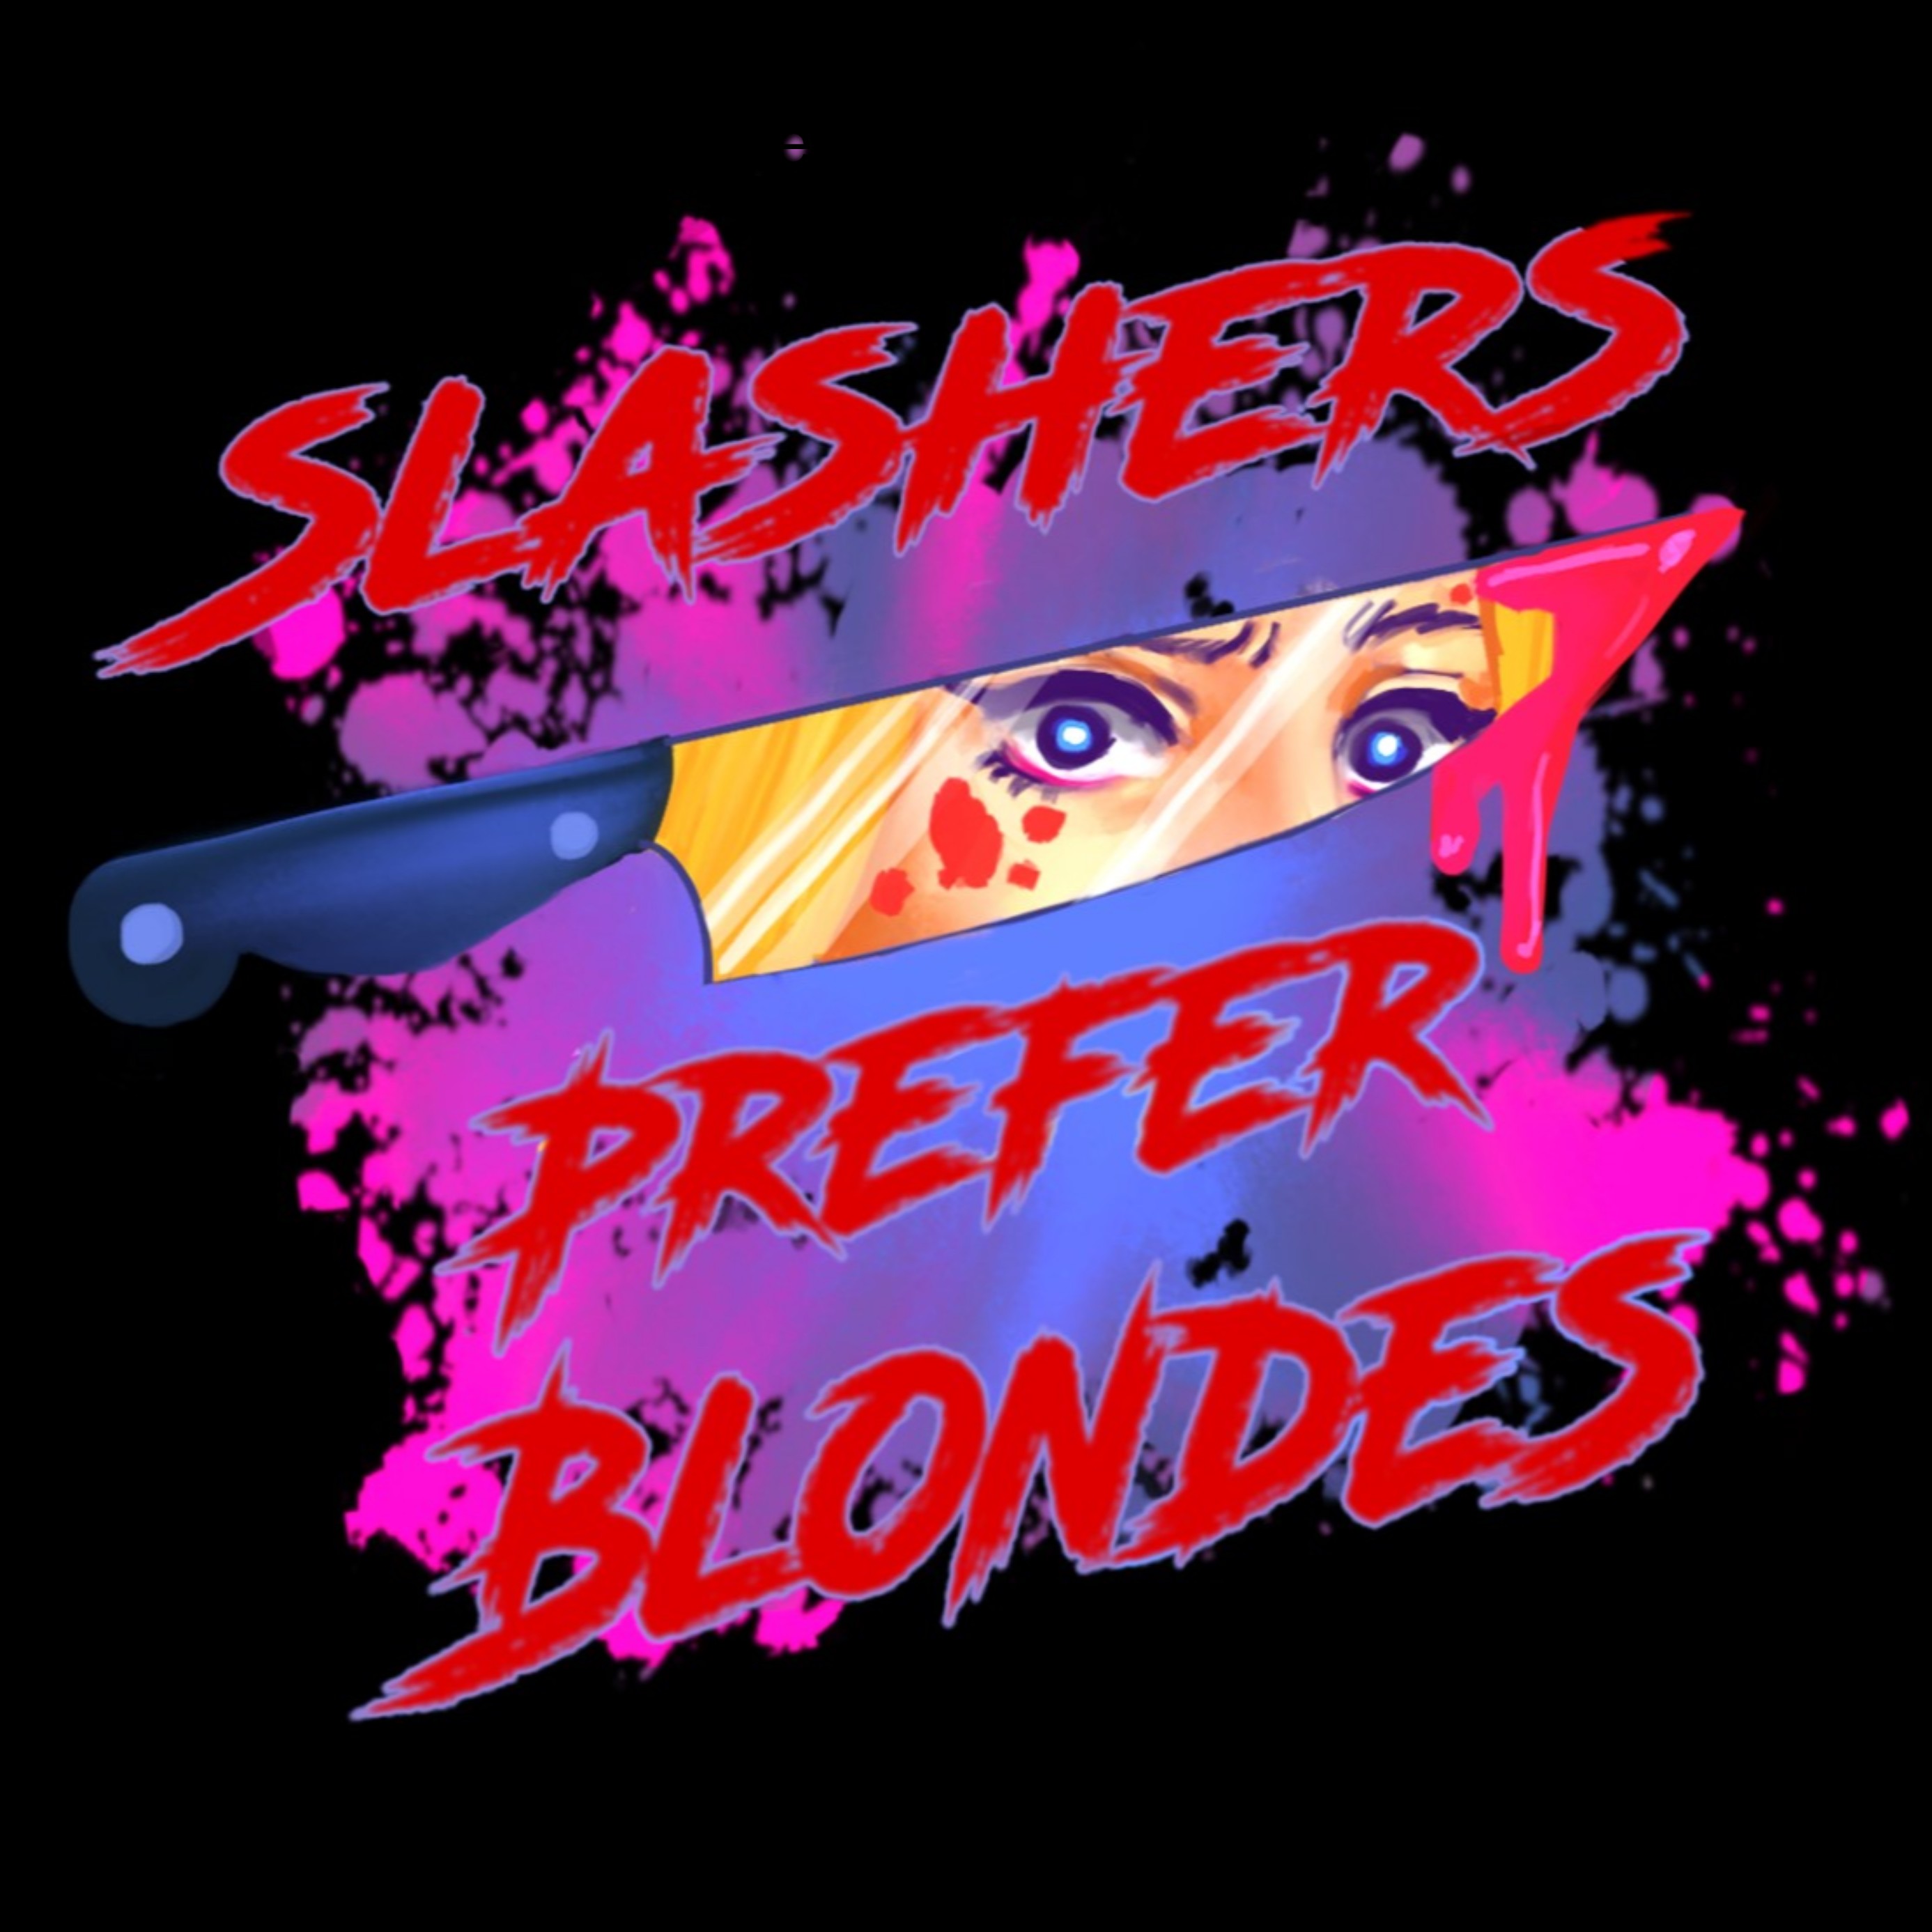 Slashers Prefer Blondes